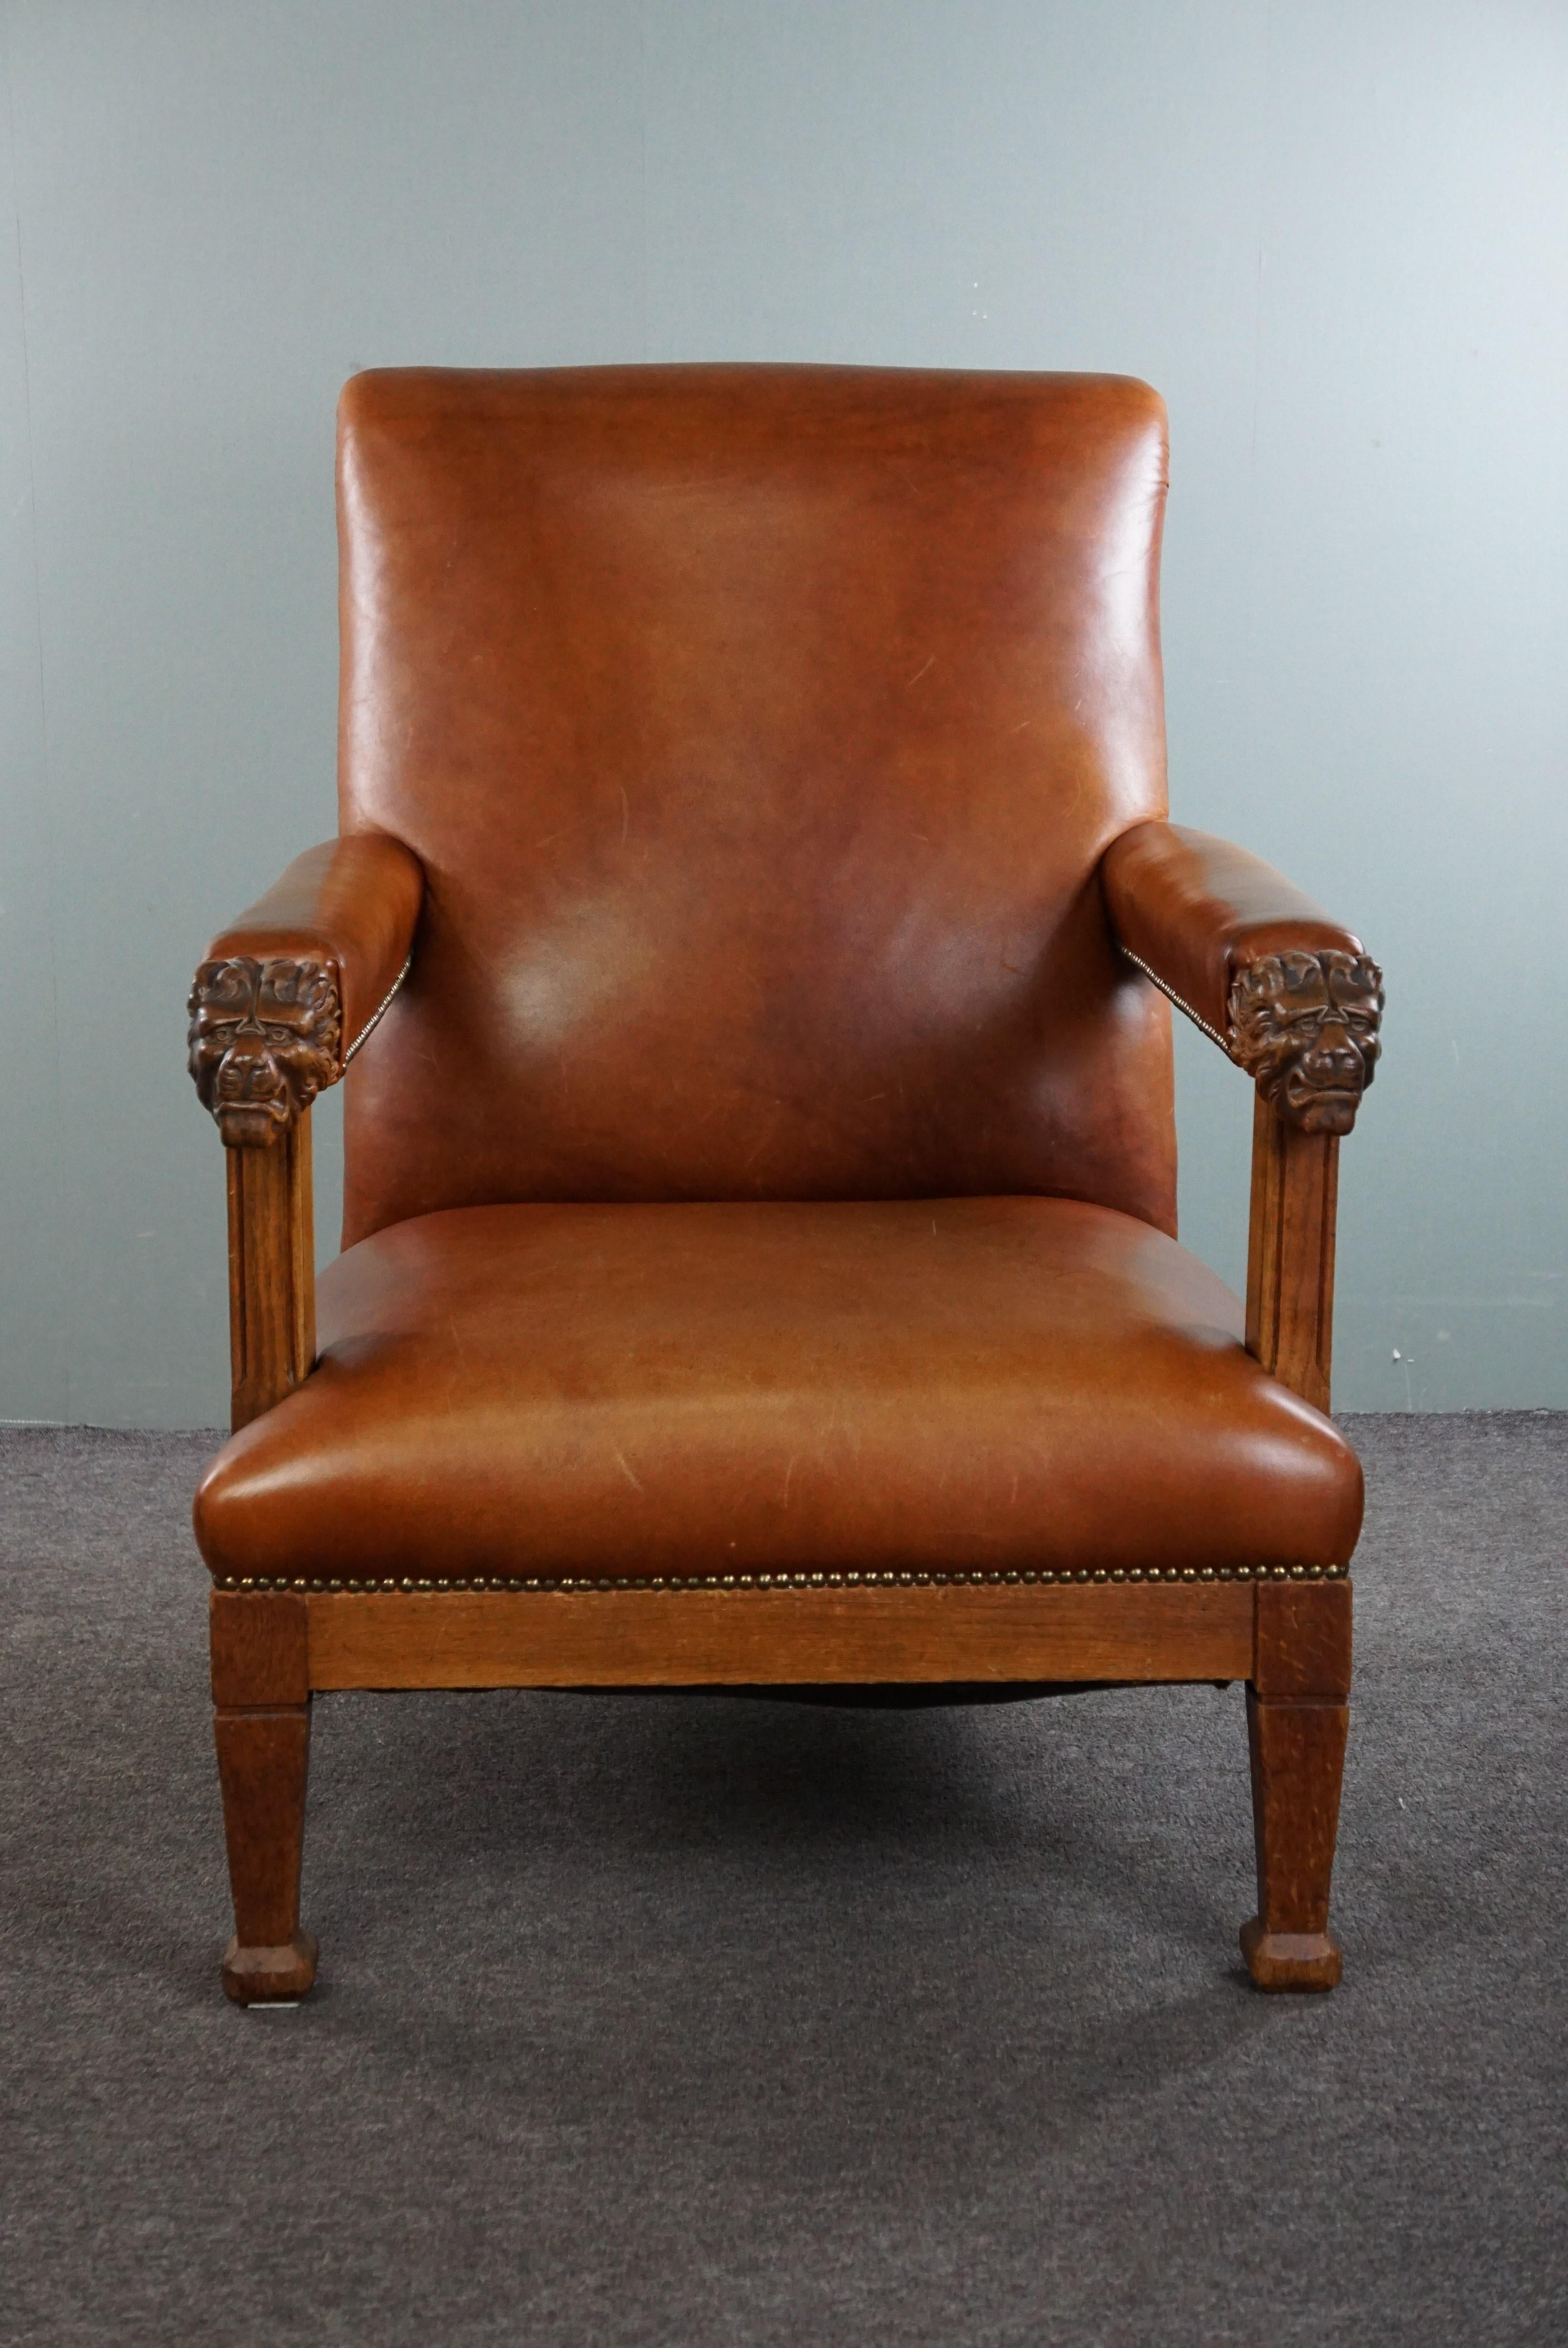 Angeboten wird dieser stattliche antike holländische Sessel mit Löwenköpfen, der mit cognacfarbenem Rindsleder neu gepolstert und mit Ziernägeln versehen wurde.

Können Sie sich diesen Sessel schon in Ihrer Einrichtung vorstellen? Es würde uns nicht